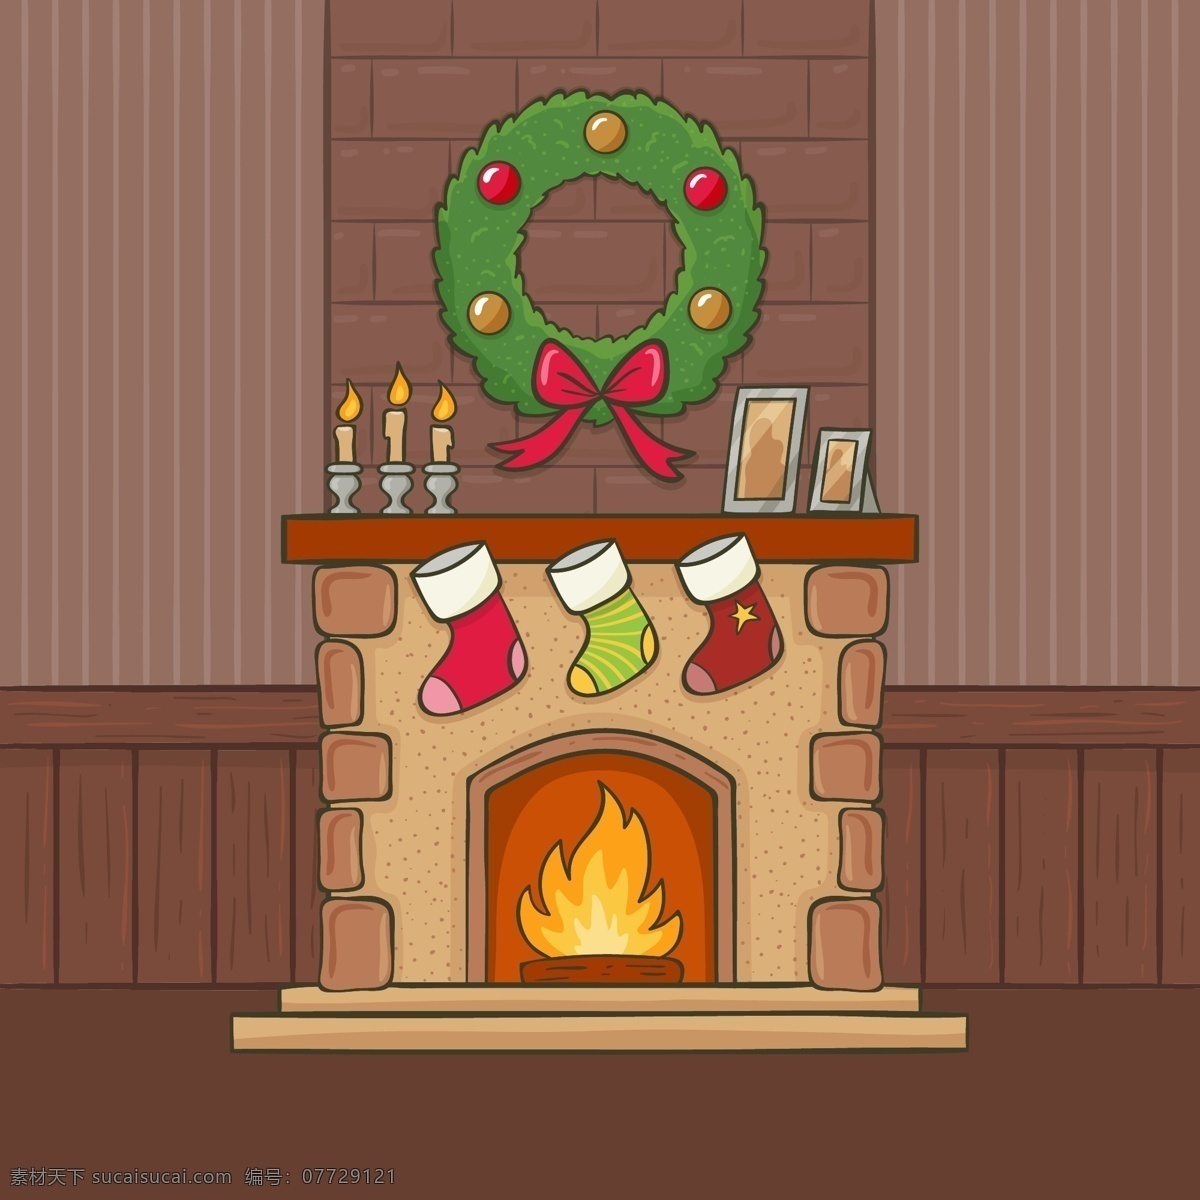 手绘 圣诞 卡通 壁炉 元素 节日素材 圣诞壁炉 圣诞节 圣诞素材 圣诞元素 手绘圣诞壁炉